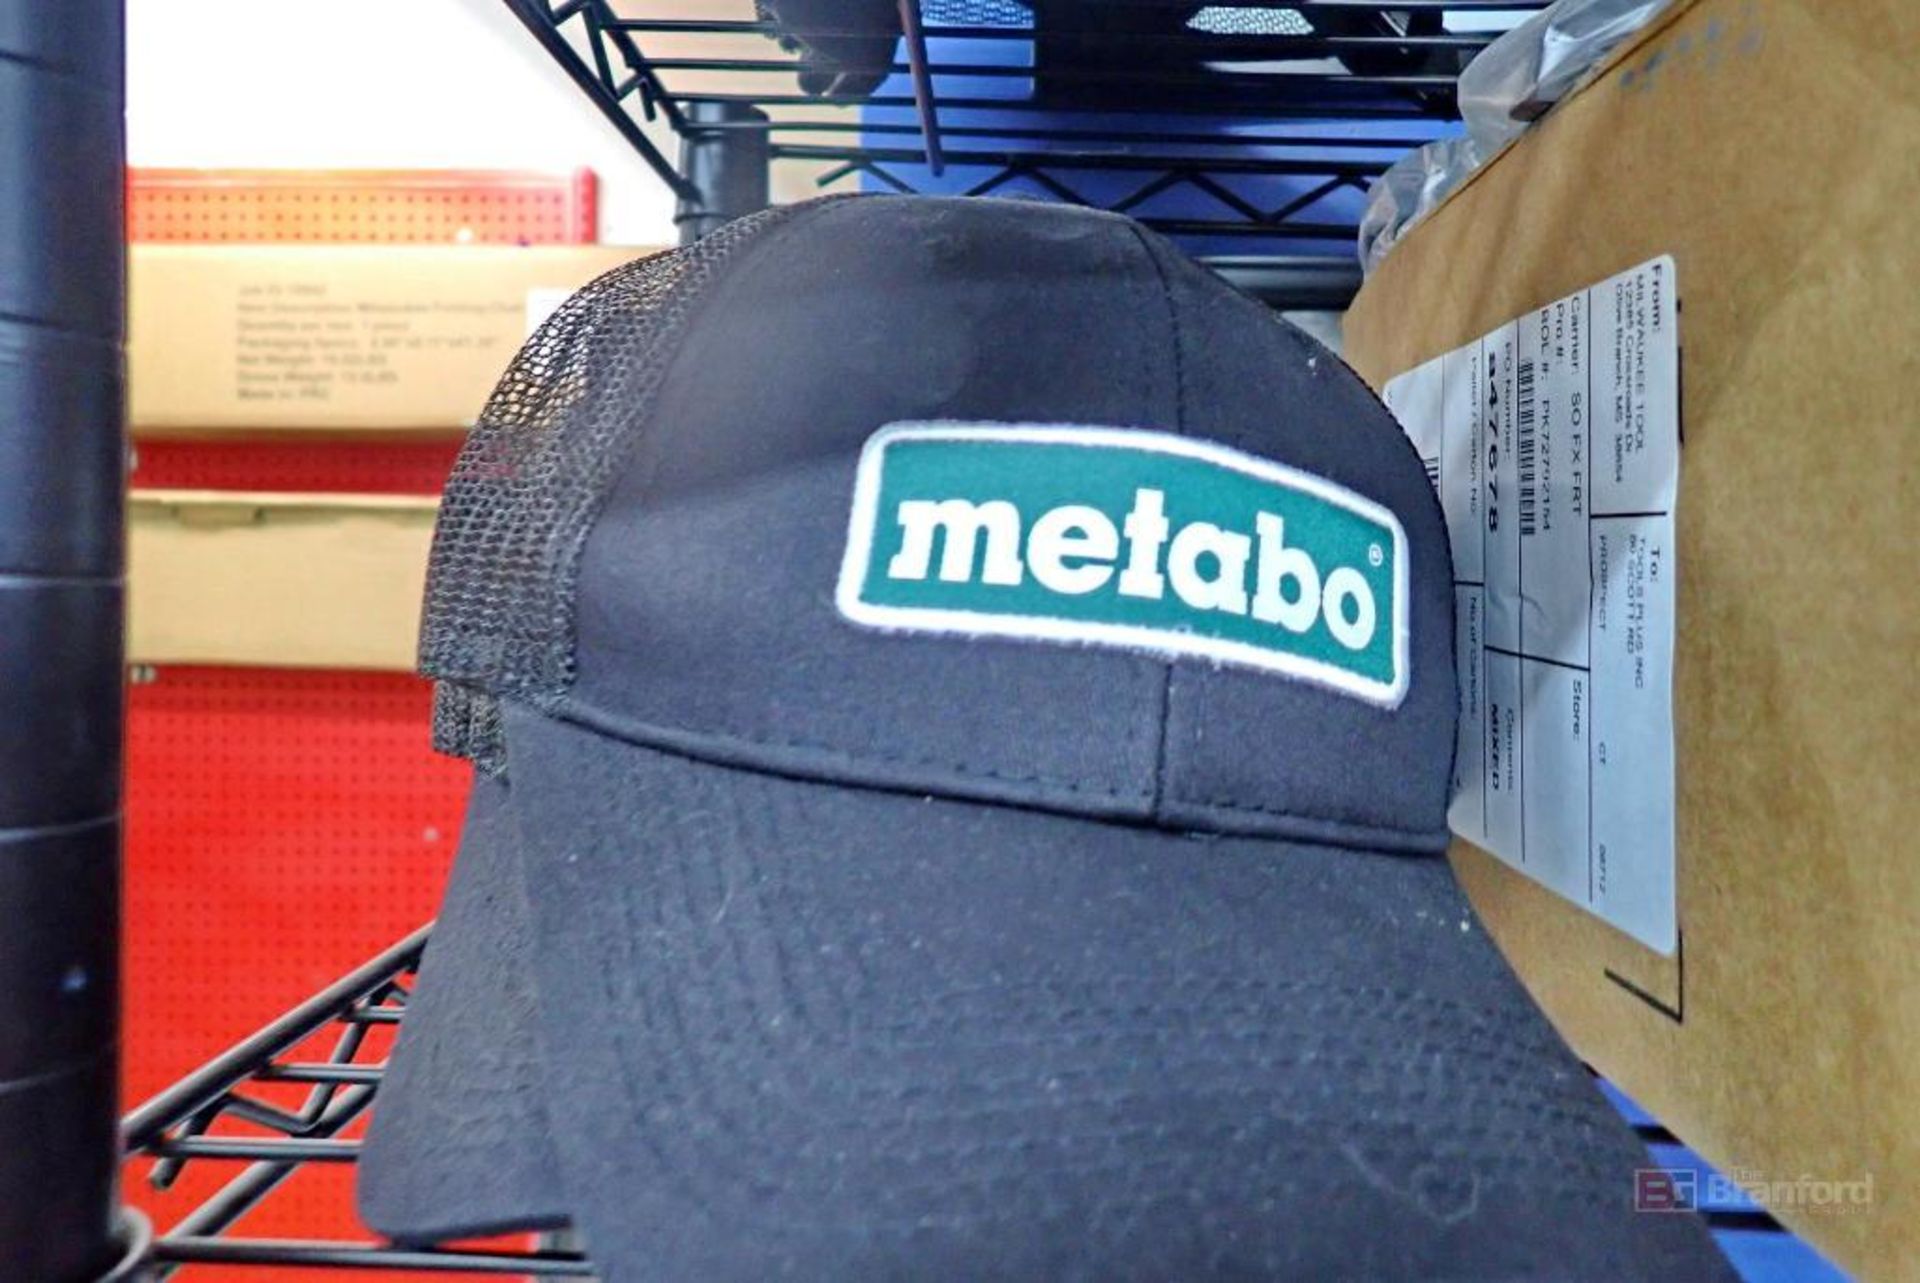 Metabo Hats, Makita Coffee Mugs & Safety Glasses - Image 4 of 8